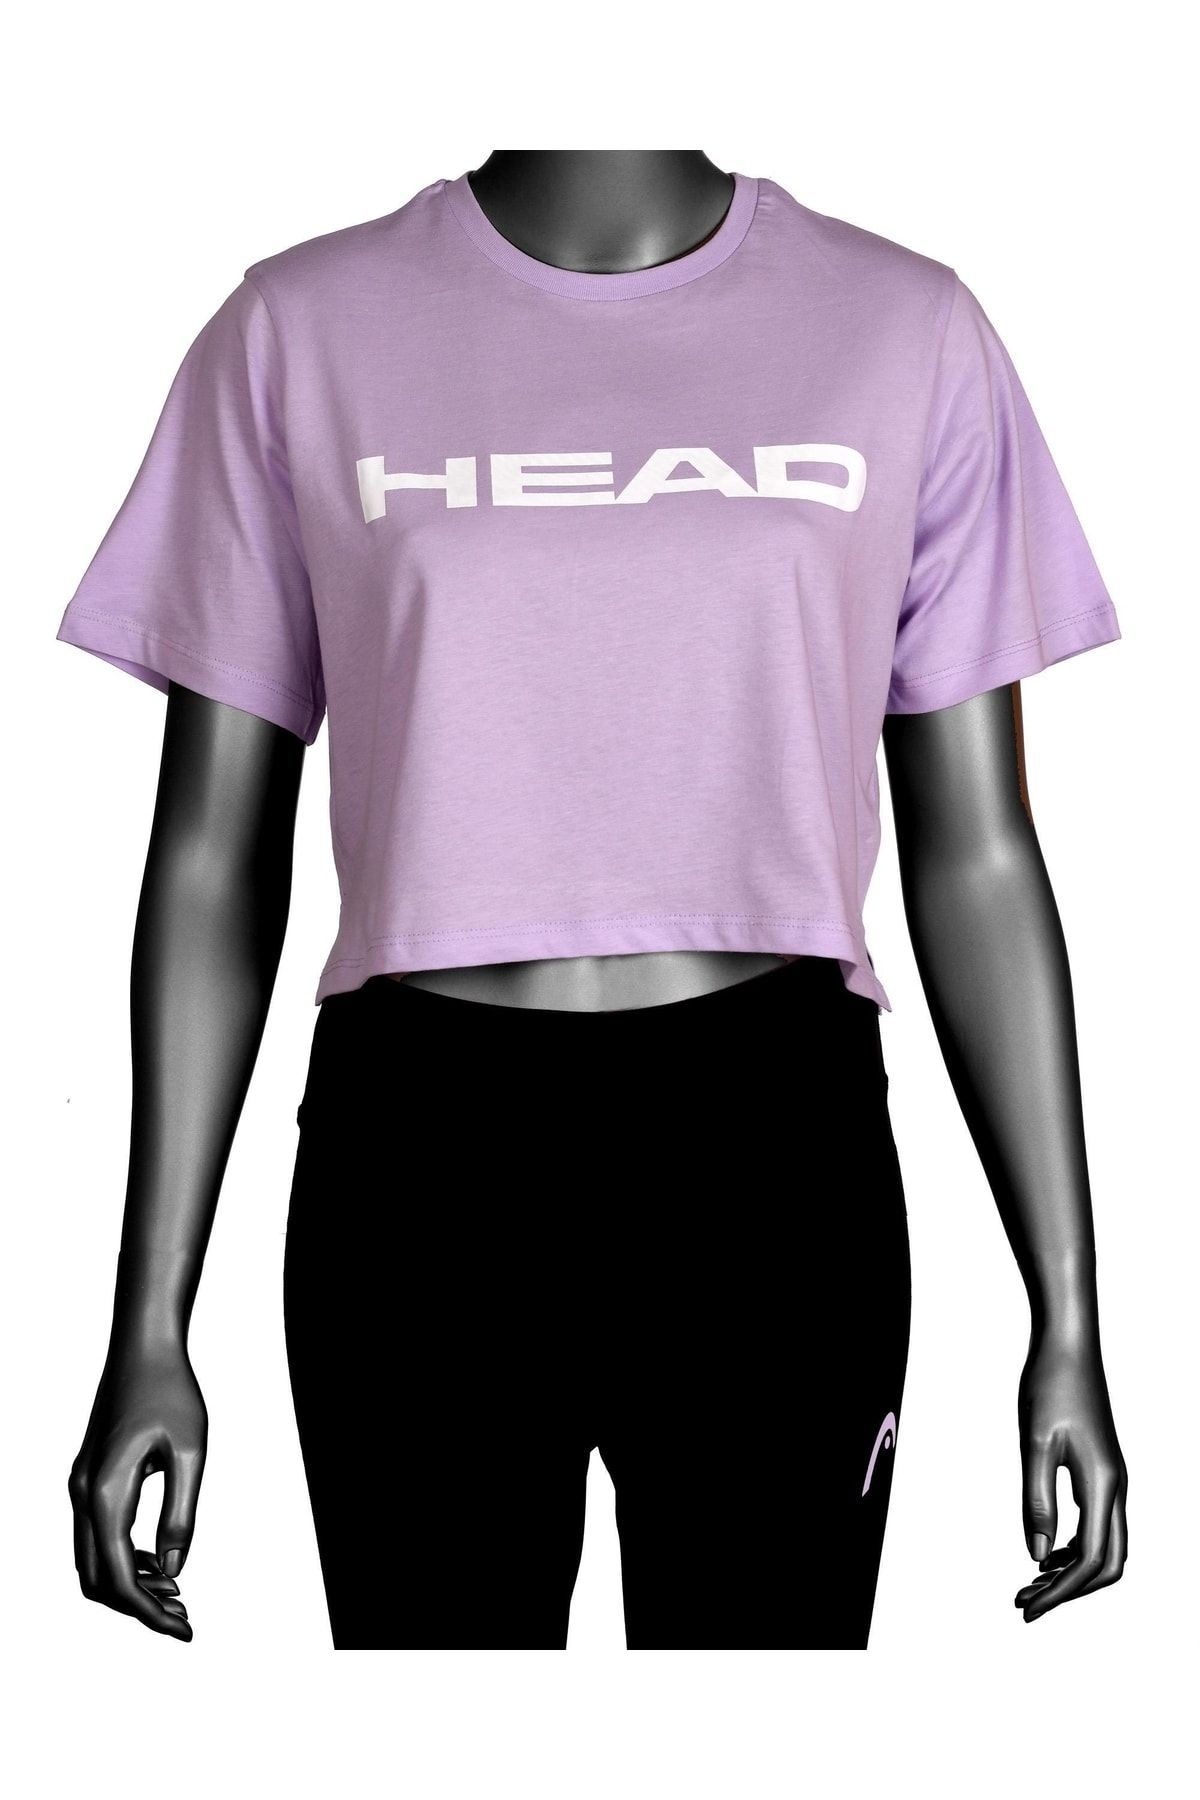 Head Kadın Lila Logo Baskılı Pamuklu Bisiklet Yaka Spor Şık Croptop Spor T-shirt Tenis Tişört